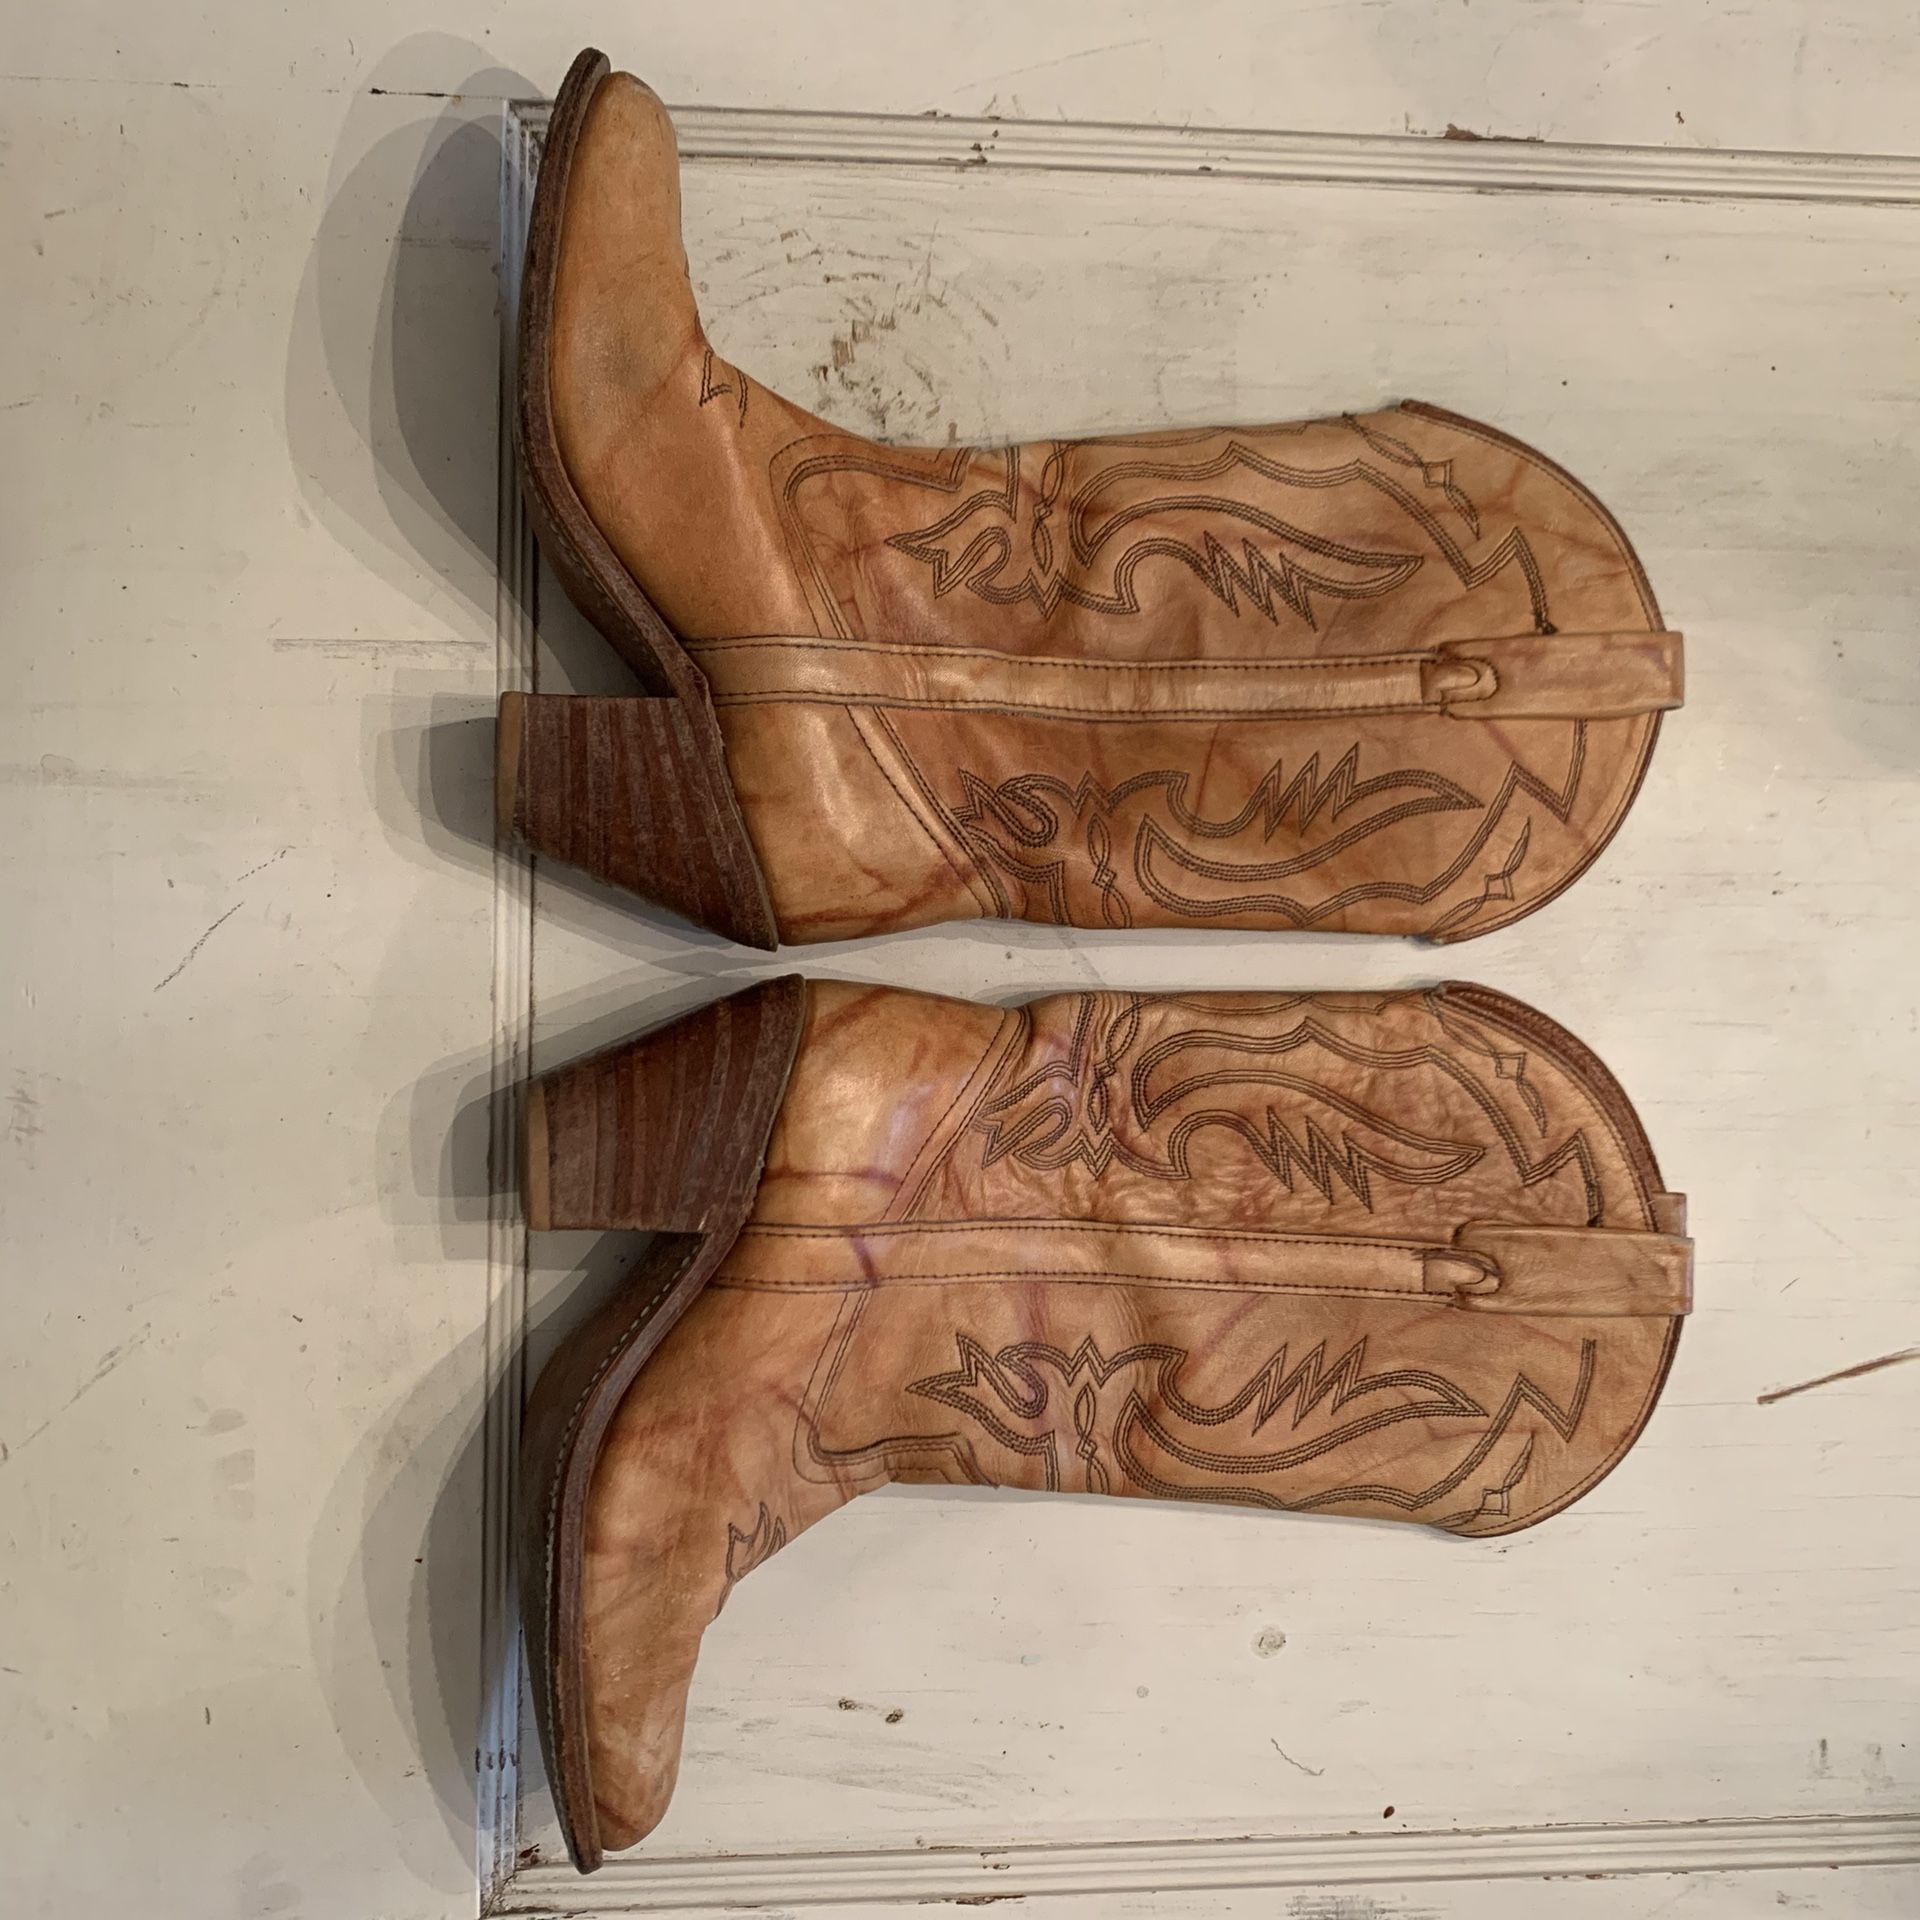 Size 8-1/2 women’s cowboy boots vintage leather